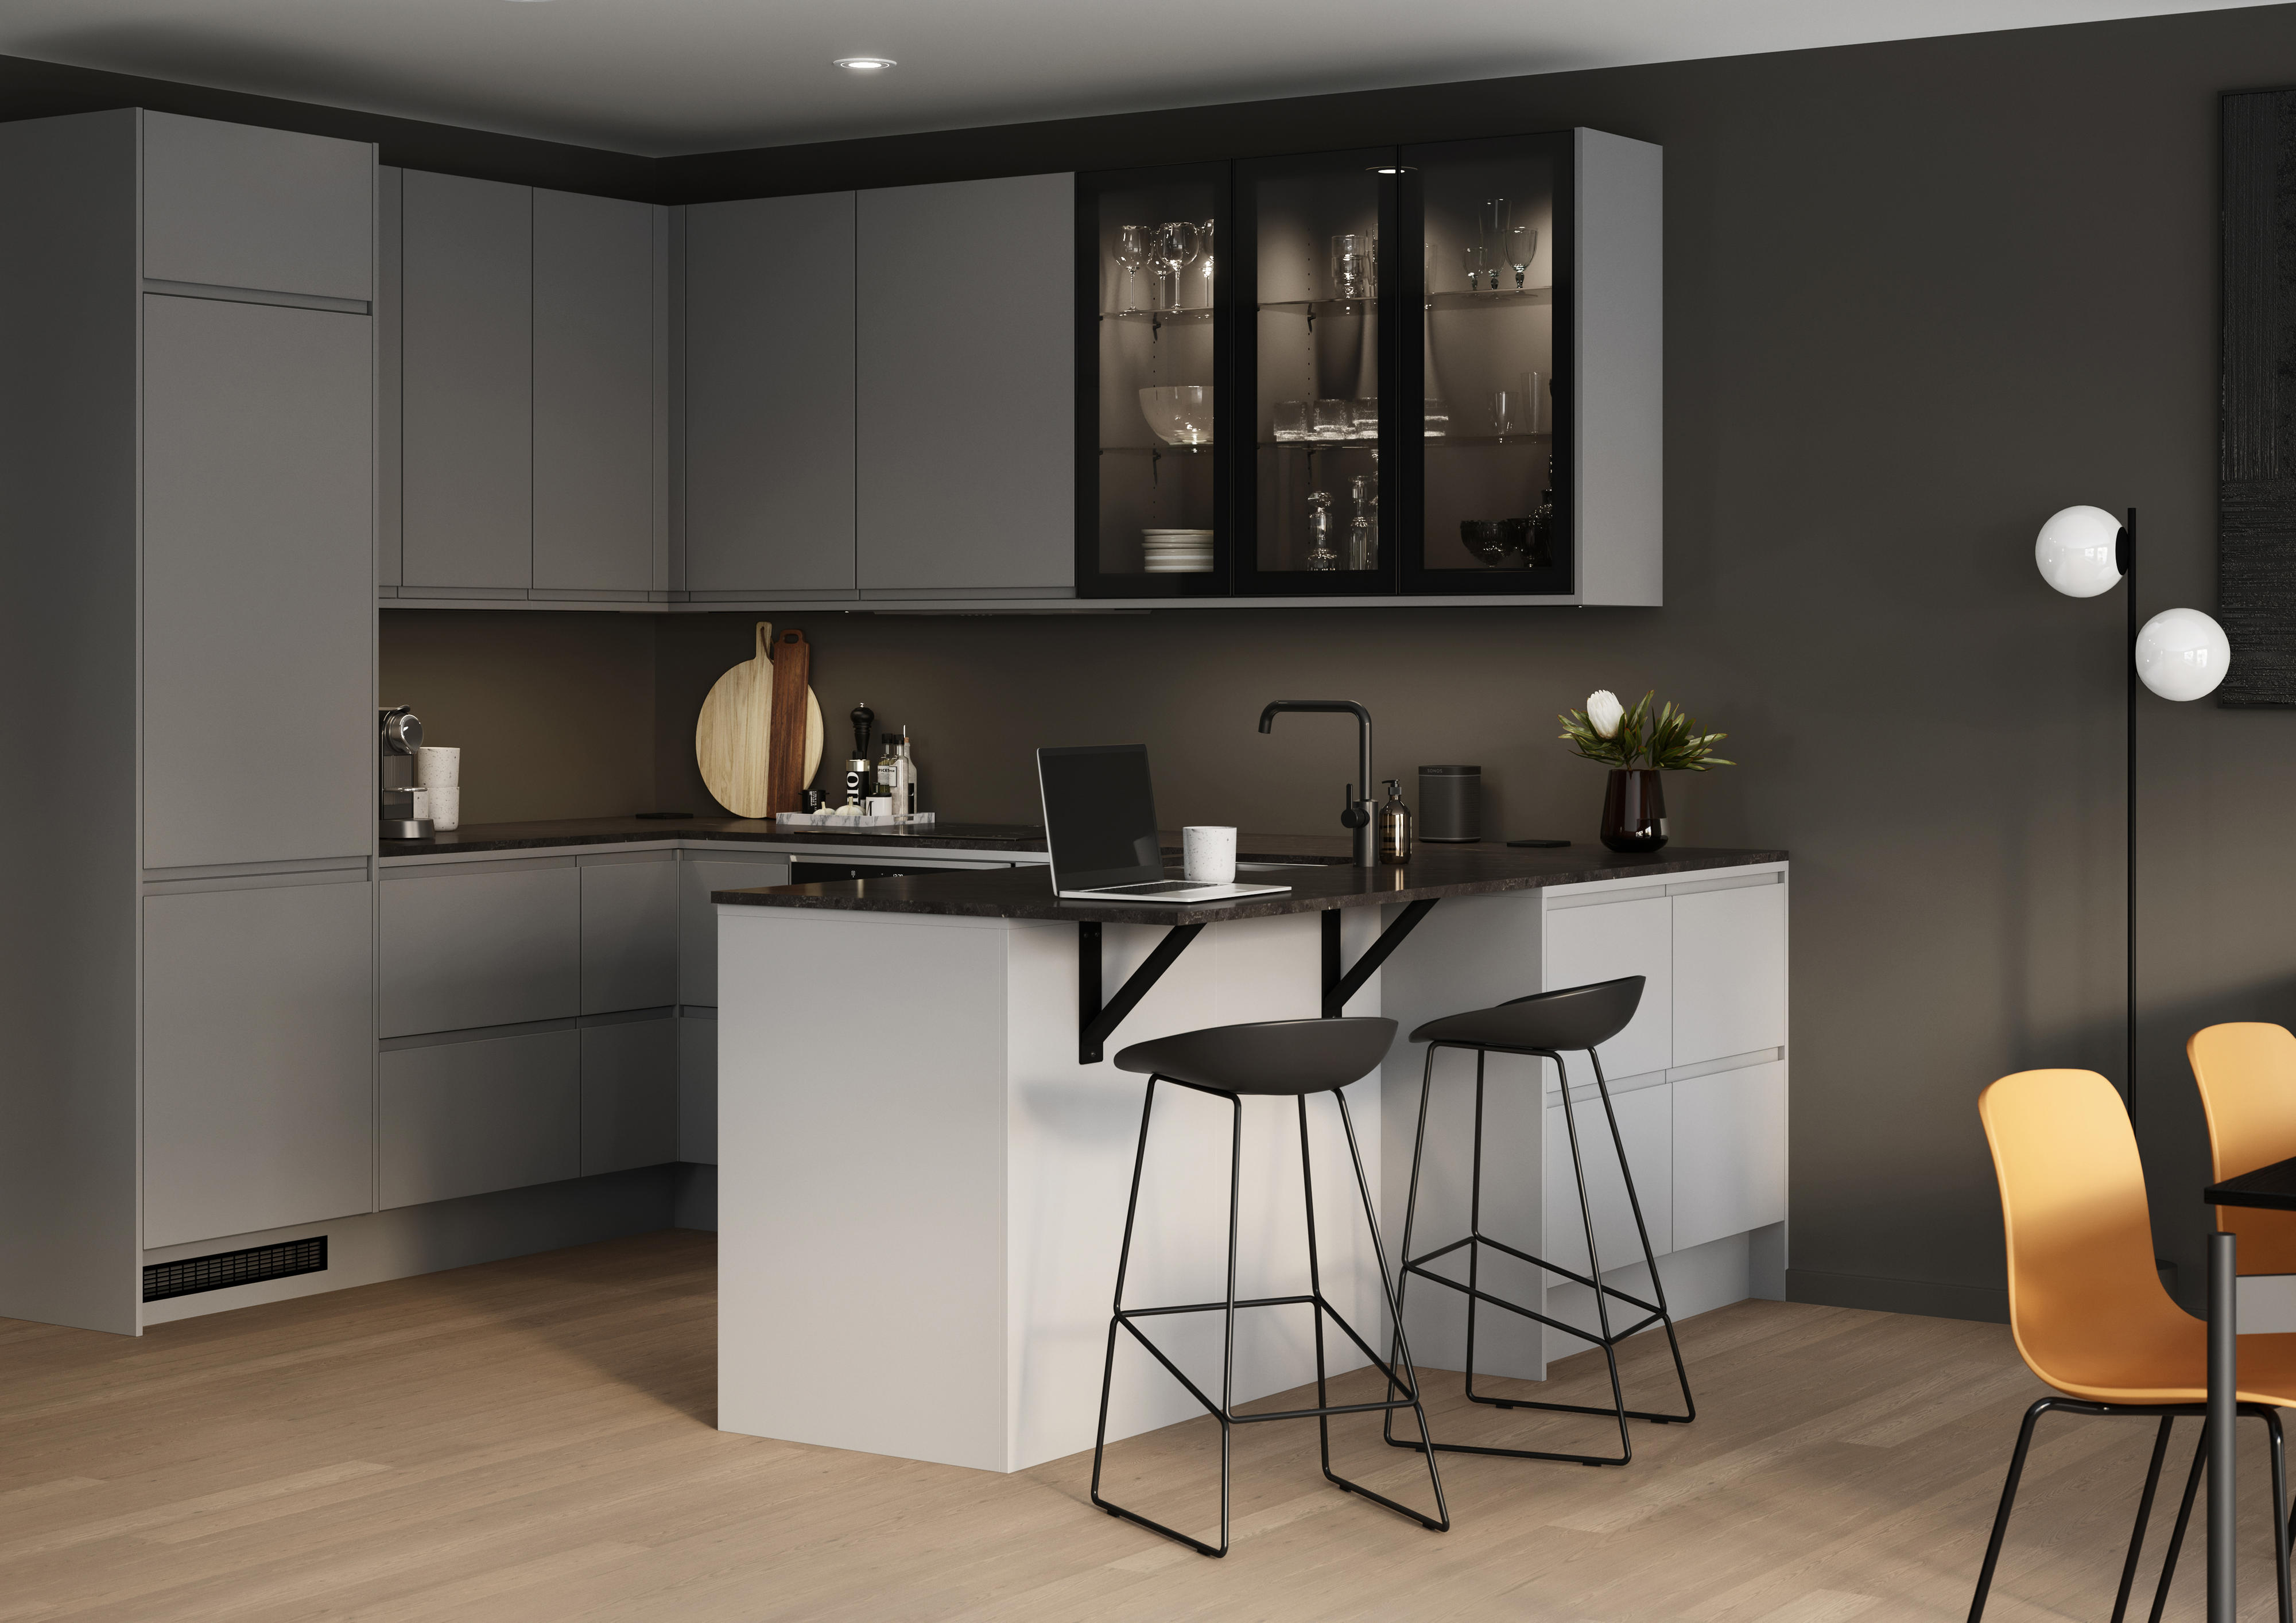 Epoq Integra Steel Grey kjøkkenkrok med brunsort benkeplate i kompaktlaminat benkeplate, glassskap og barkrakker